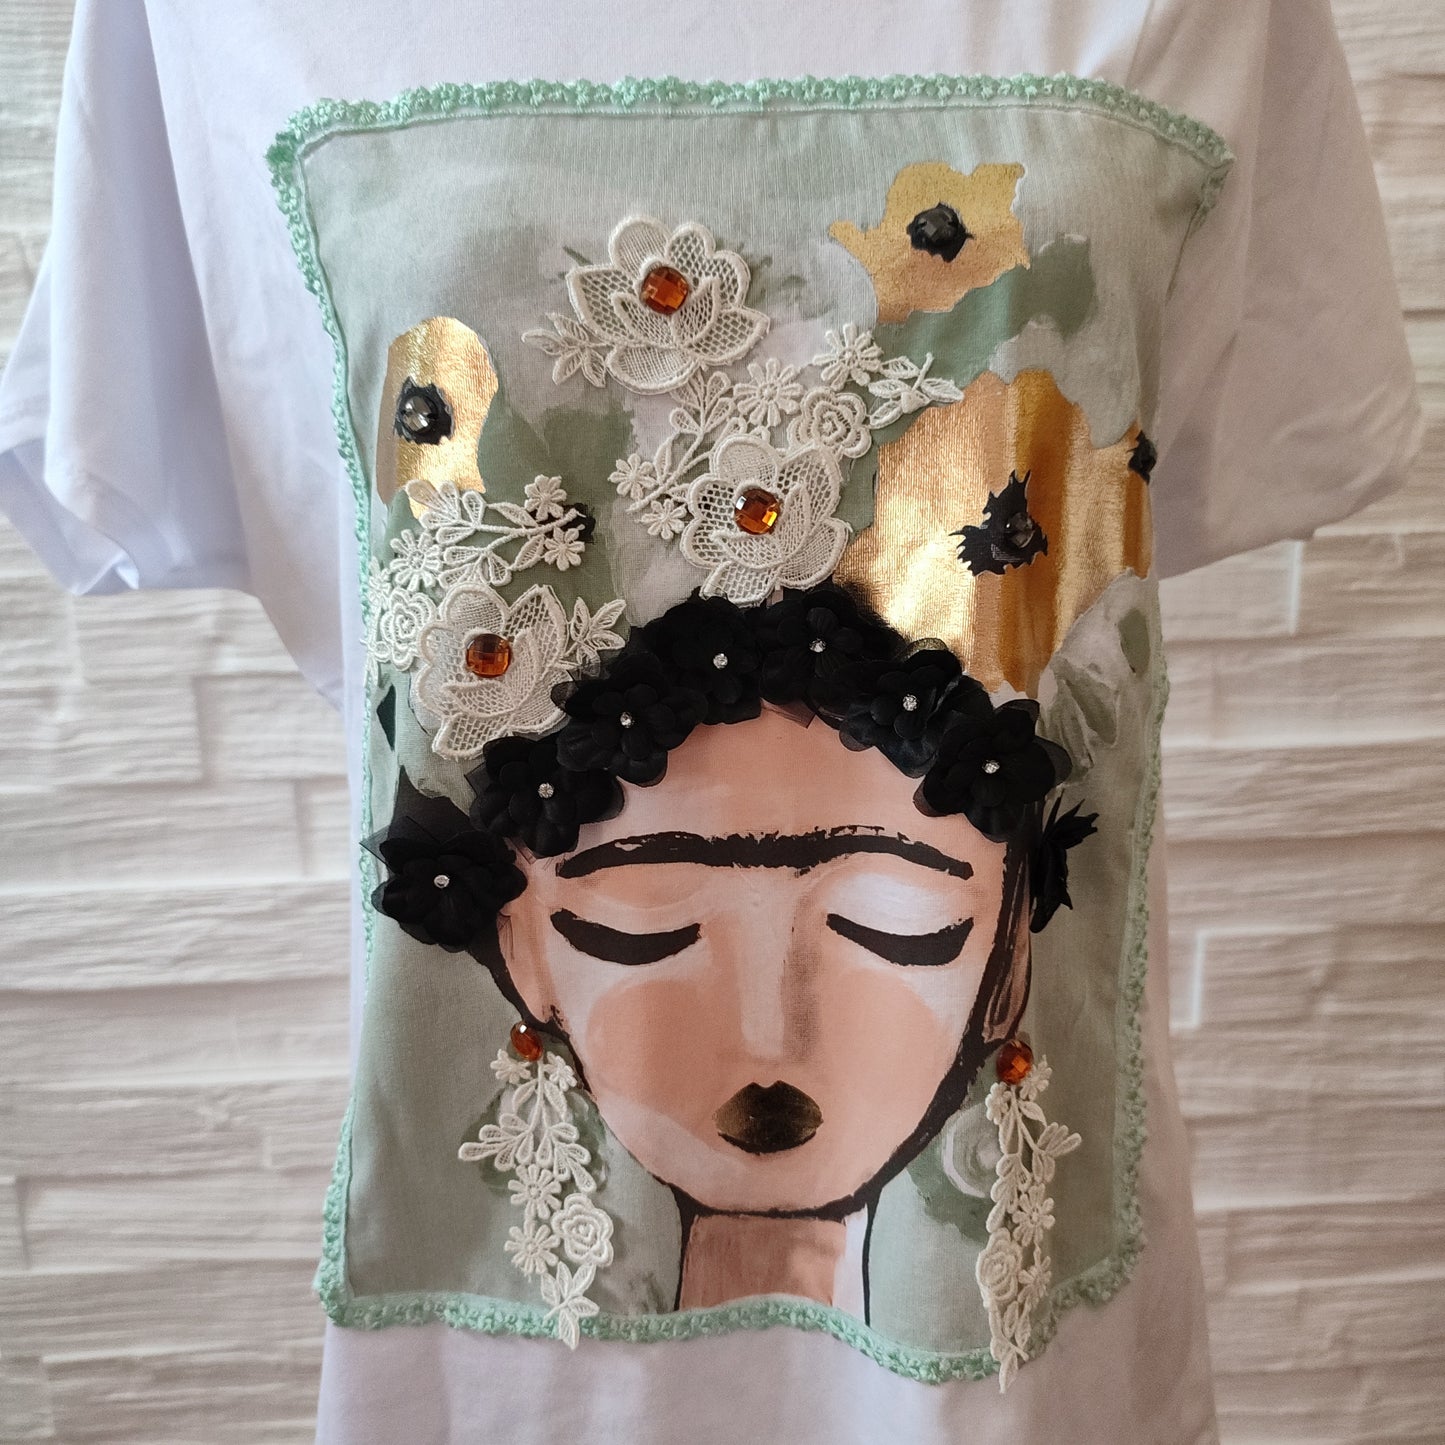 T shirt over  Frida Kahlo